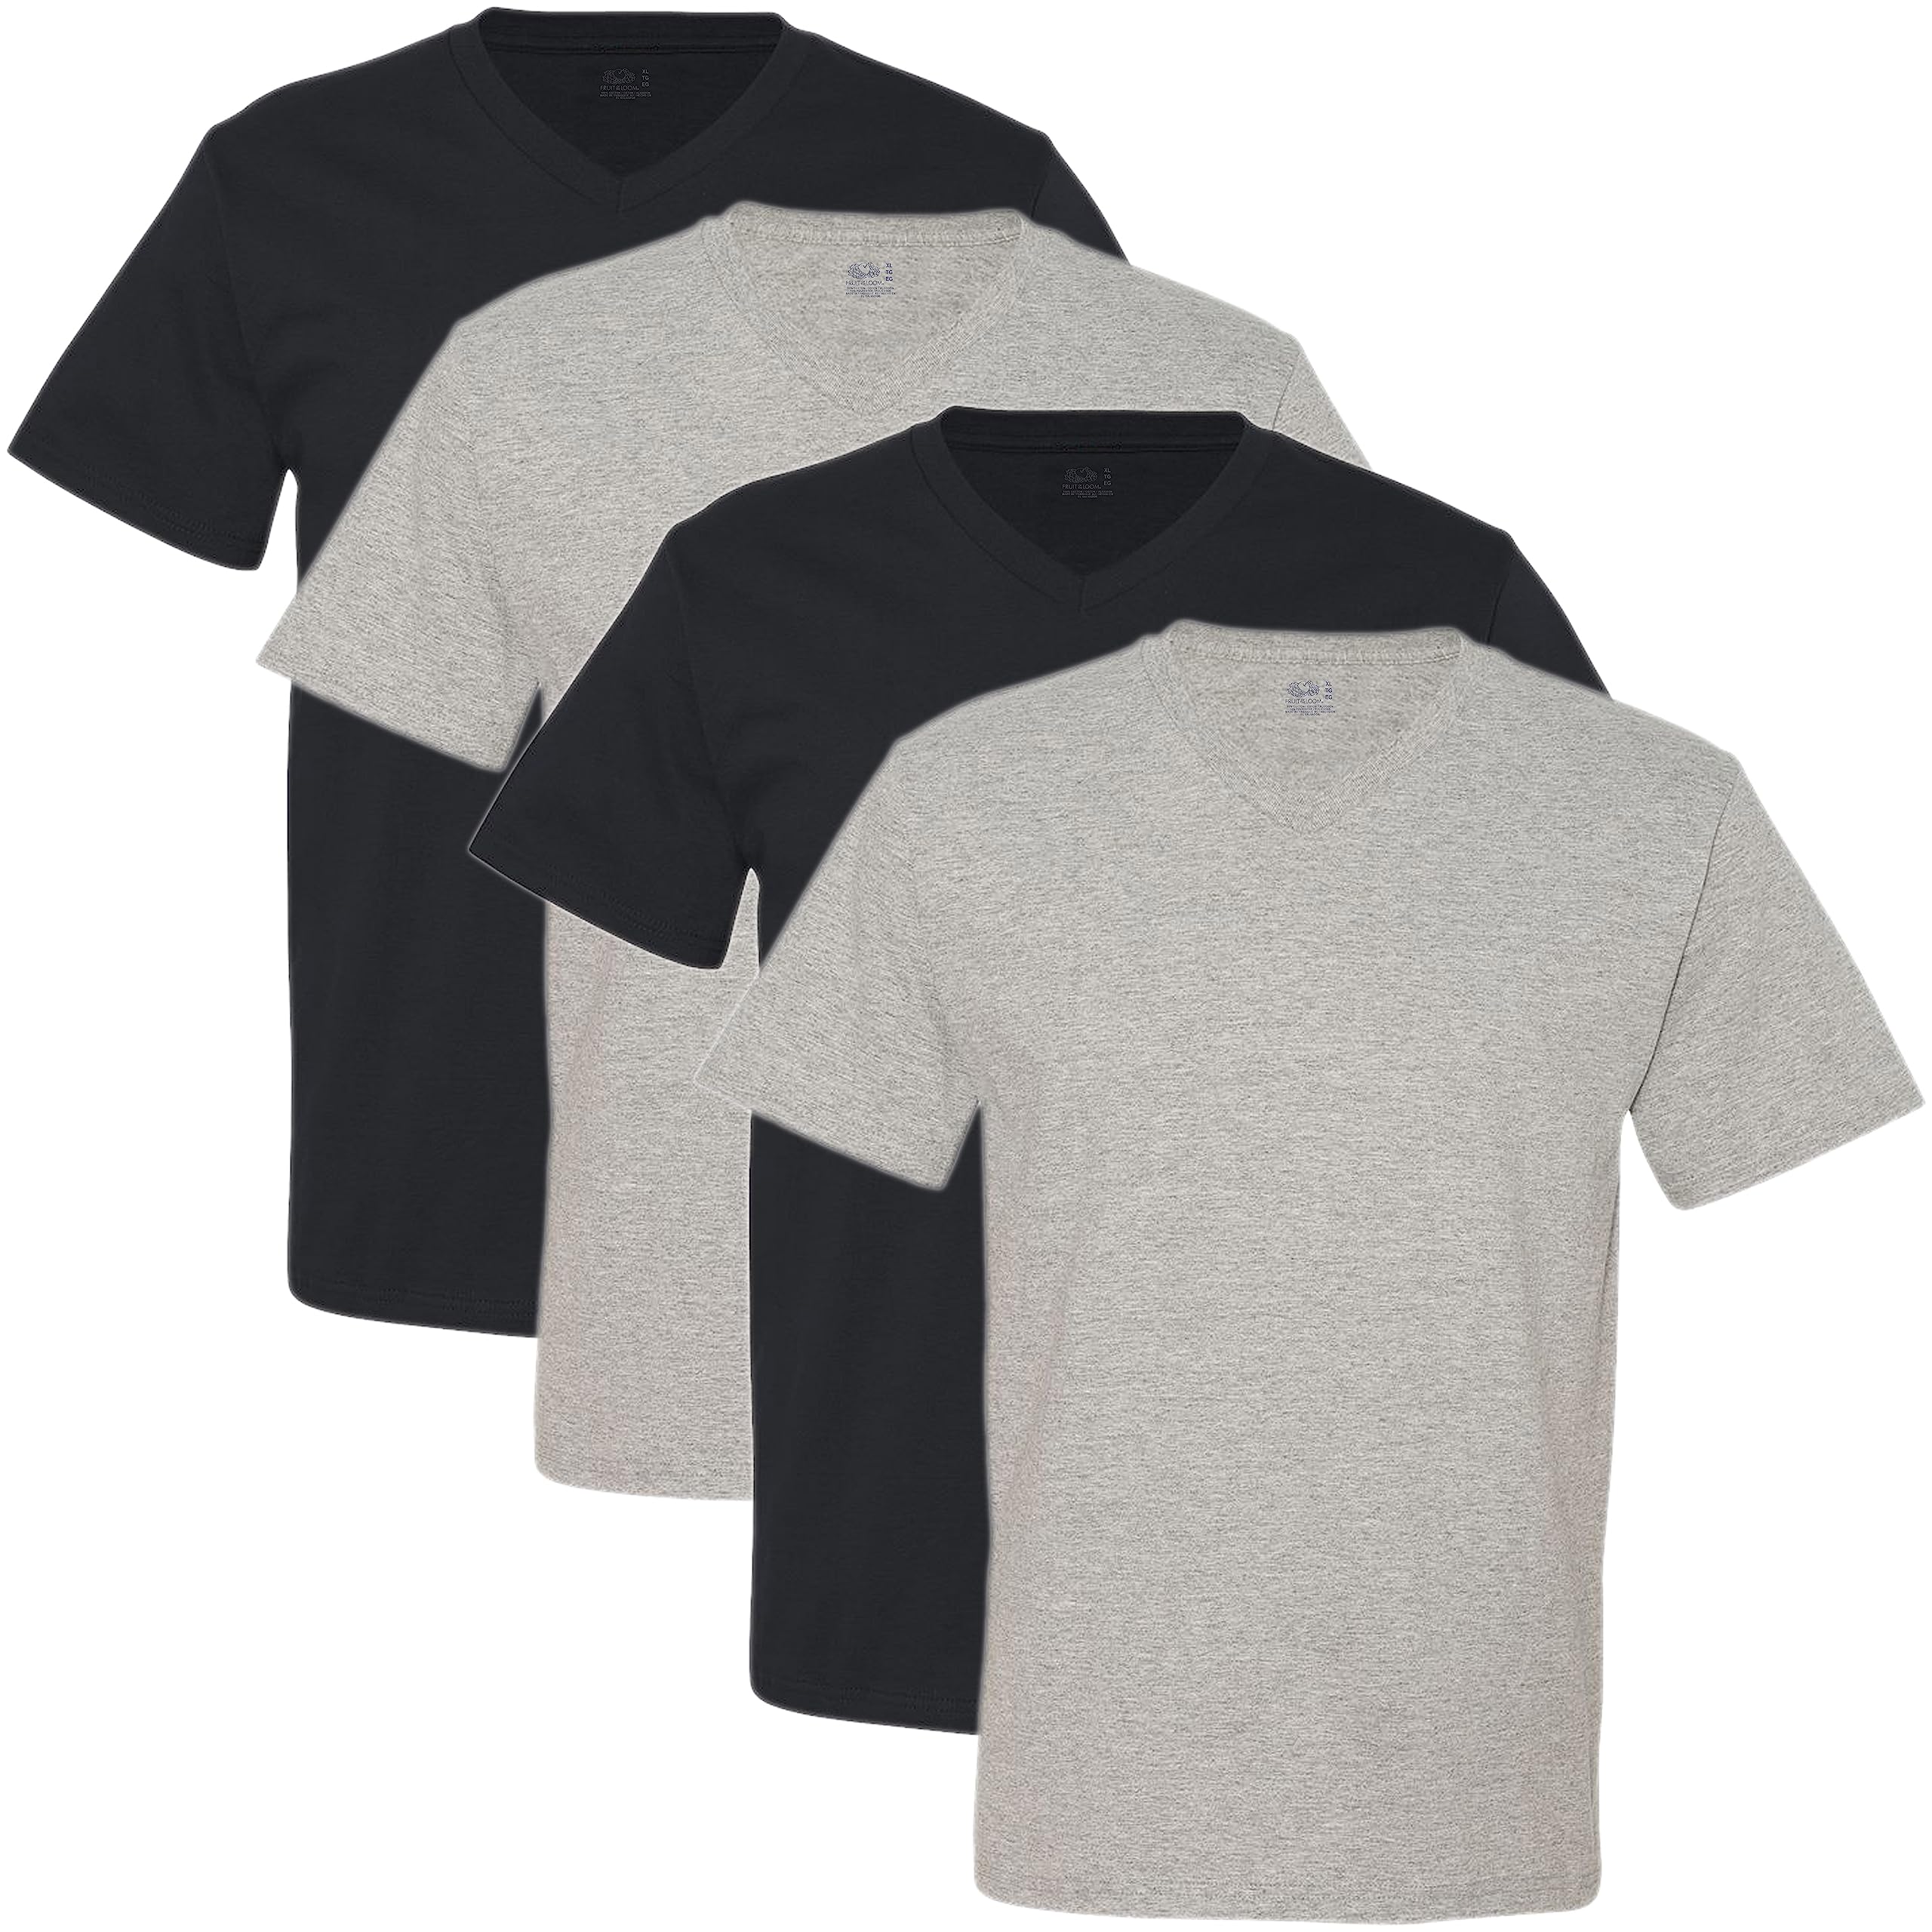 Fruit of the Loom Men's 4 Pack V-Neck T-Shirt, Black/Gray, Medium